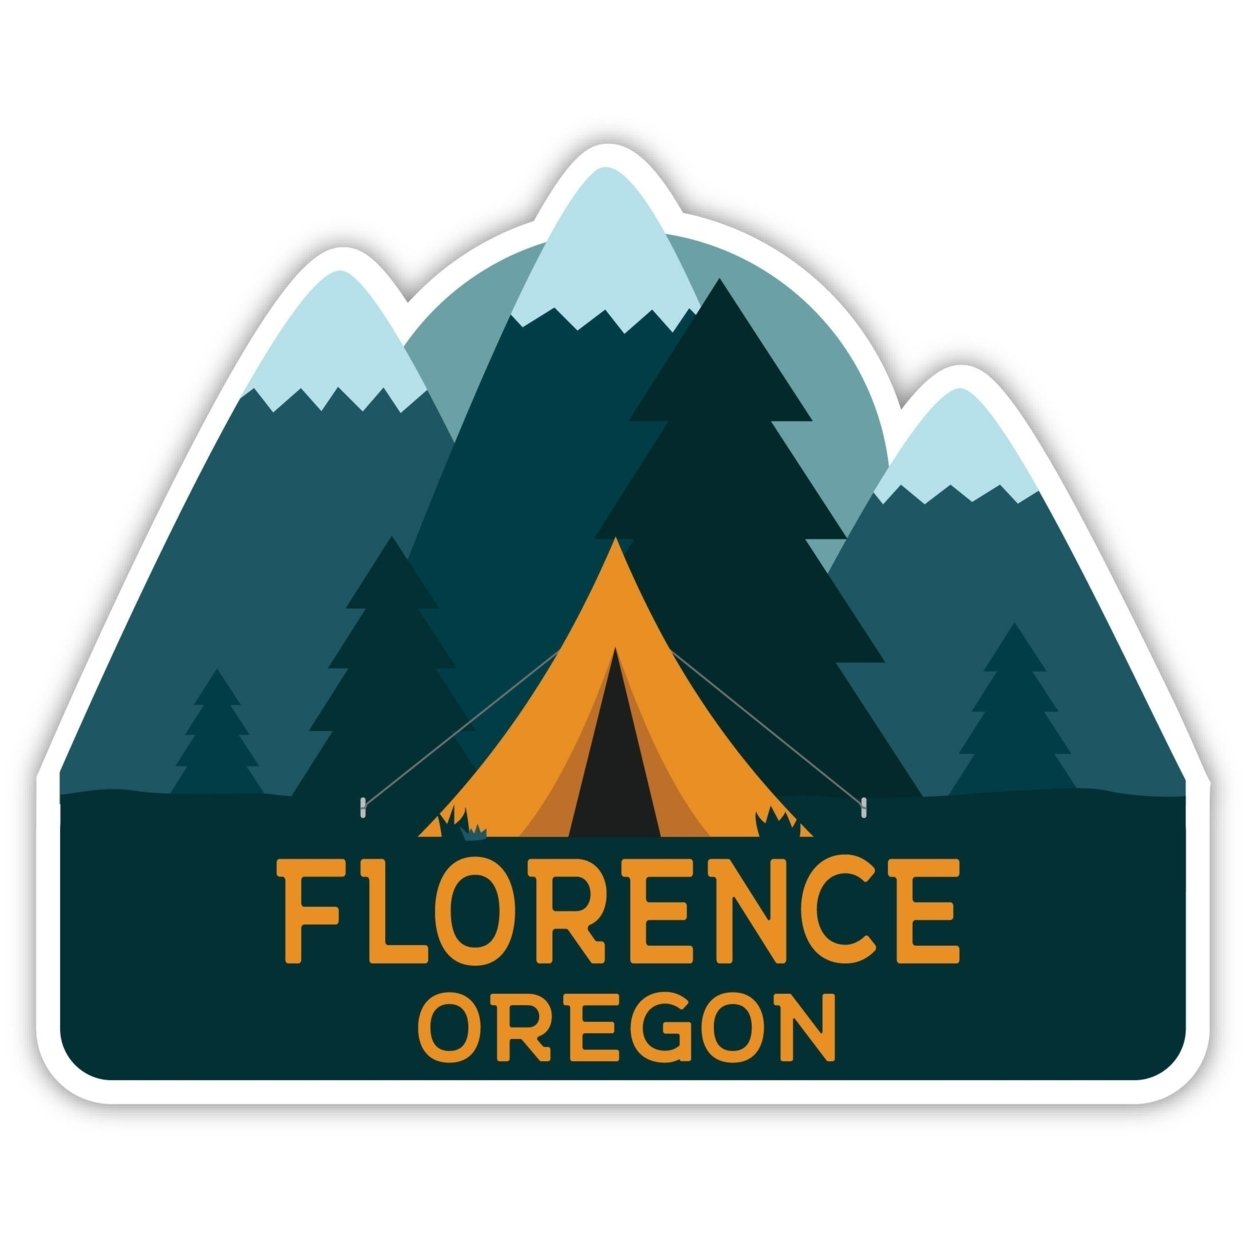 Florence Oregon Souvenir Decorative Stickers (Choose Theme And Size) - Single Unit, 10-Inch, Tent